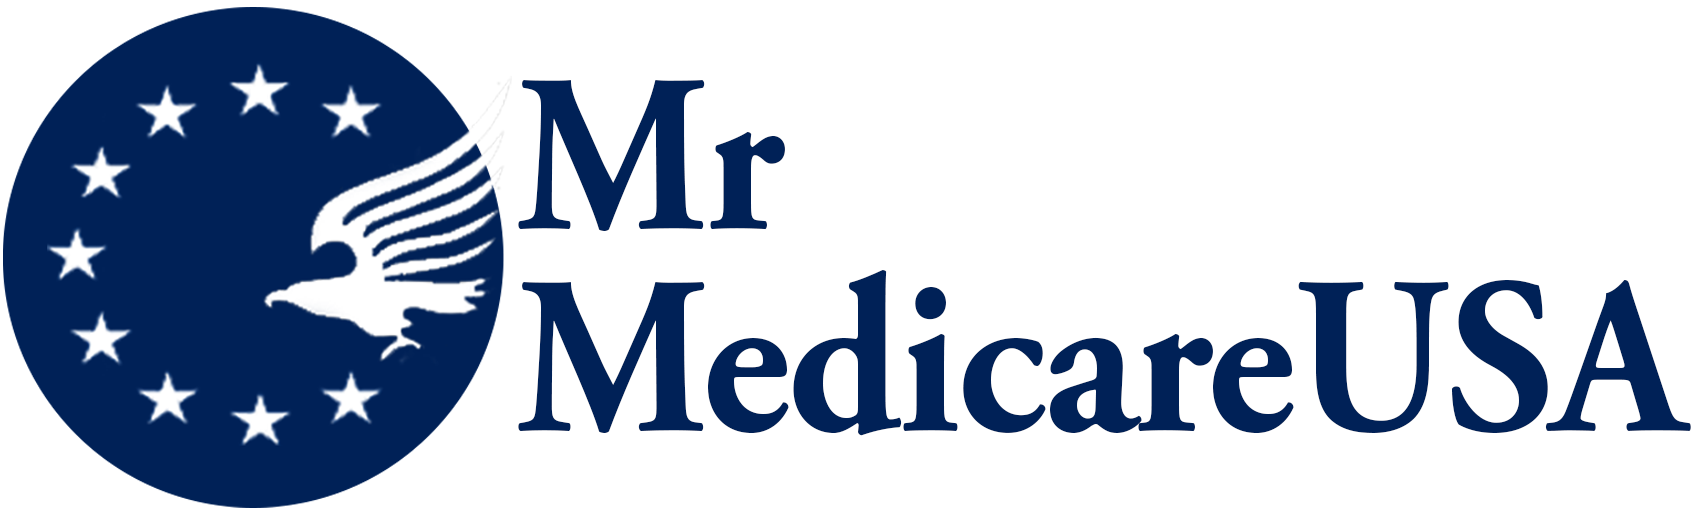 Mr Medicare USA